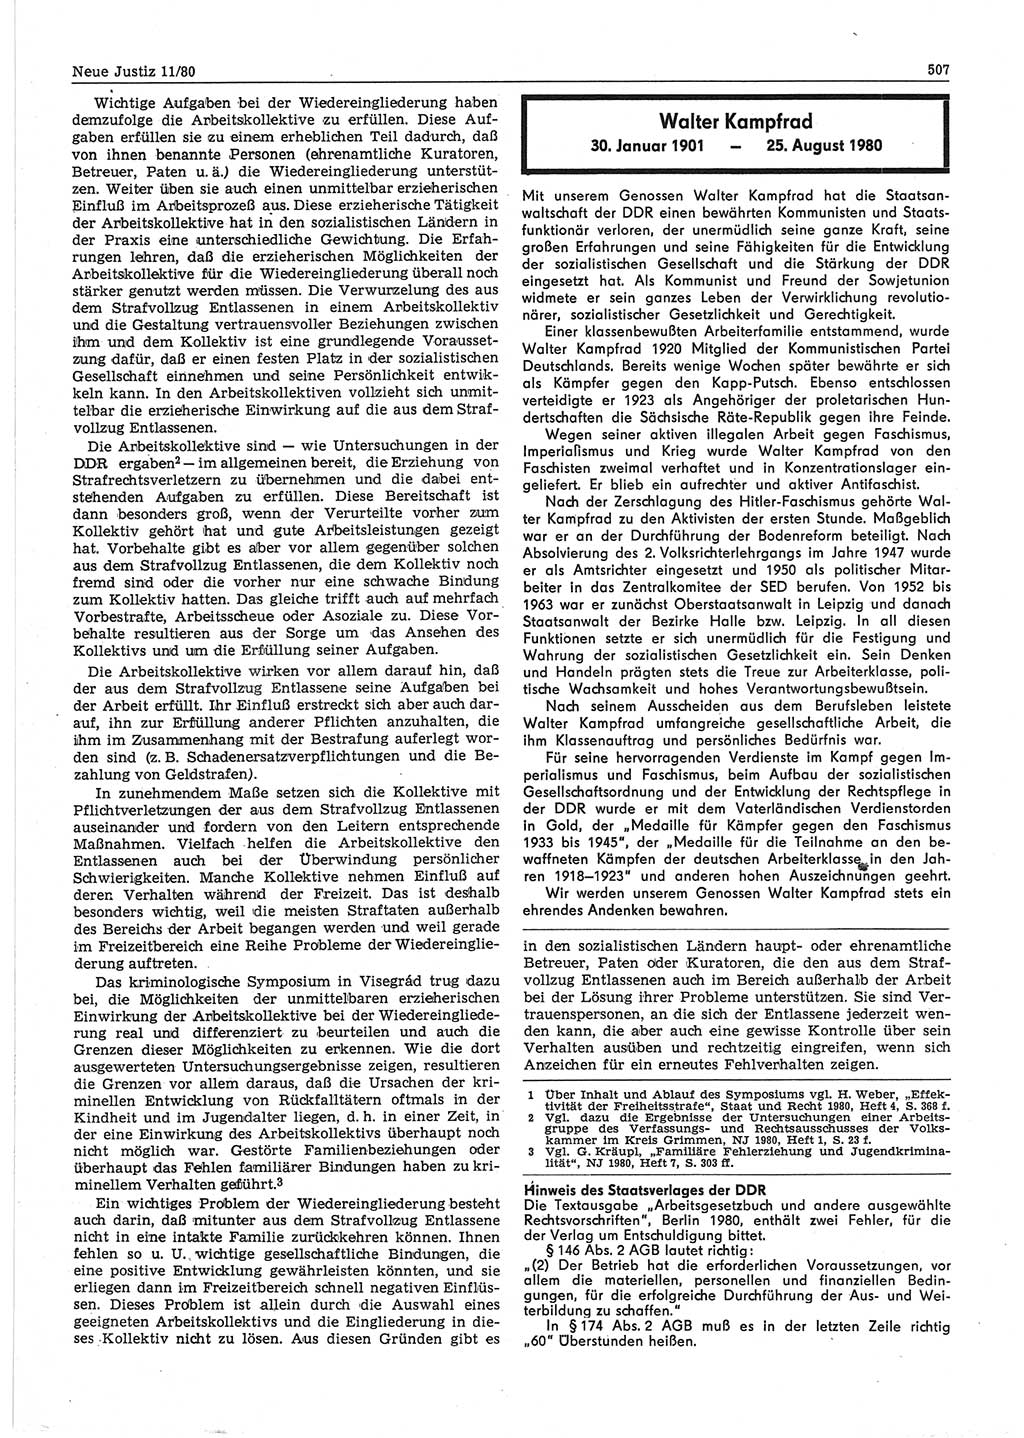 Neue Justiz (NJ), Zeitschrift für sozialistisches Recht und Gesetzlichkeit [Deutsche Demokratische Republik (DDR)], 34. Jahrgang 1980, Seite 507 (NJ DDR 1980, S. 507)